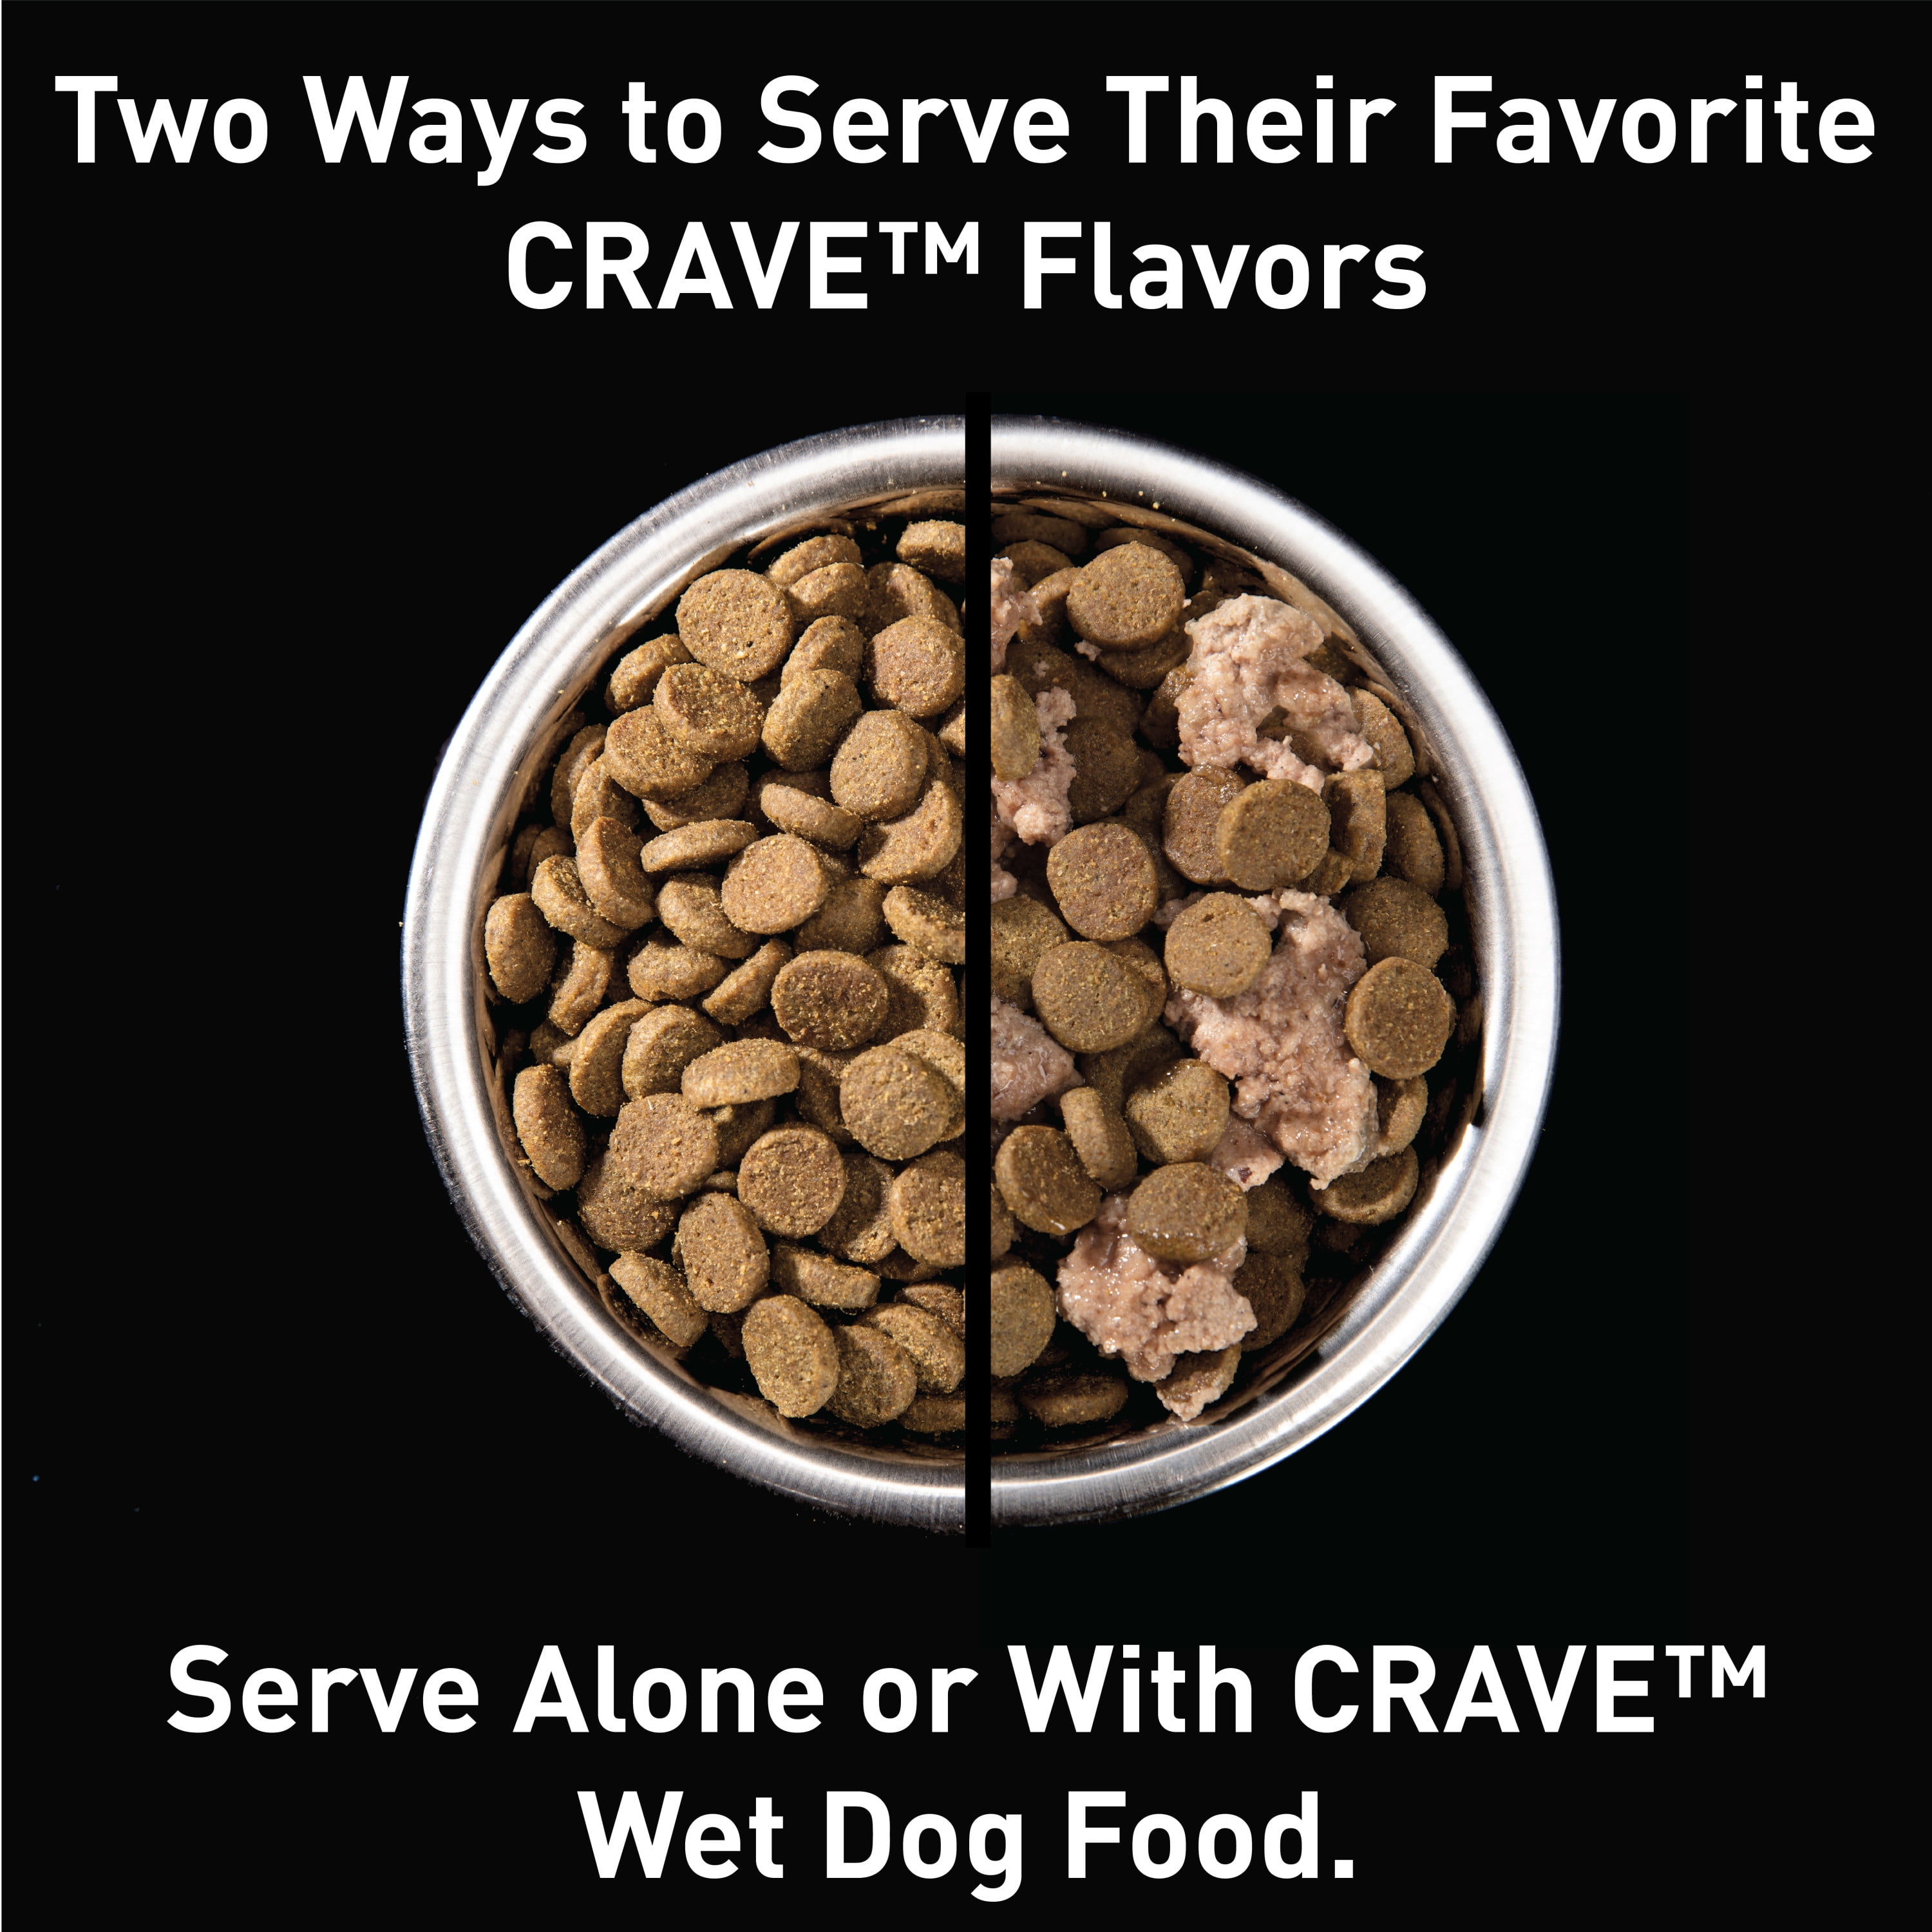 crave premium dog food